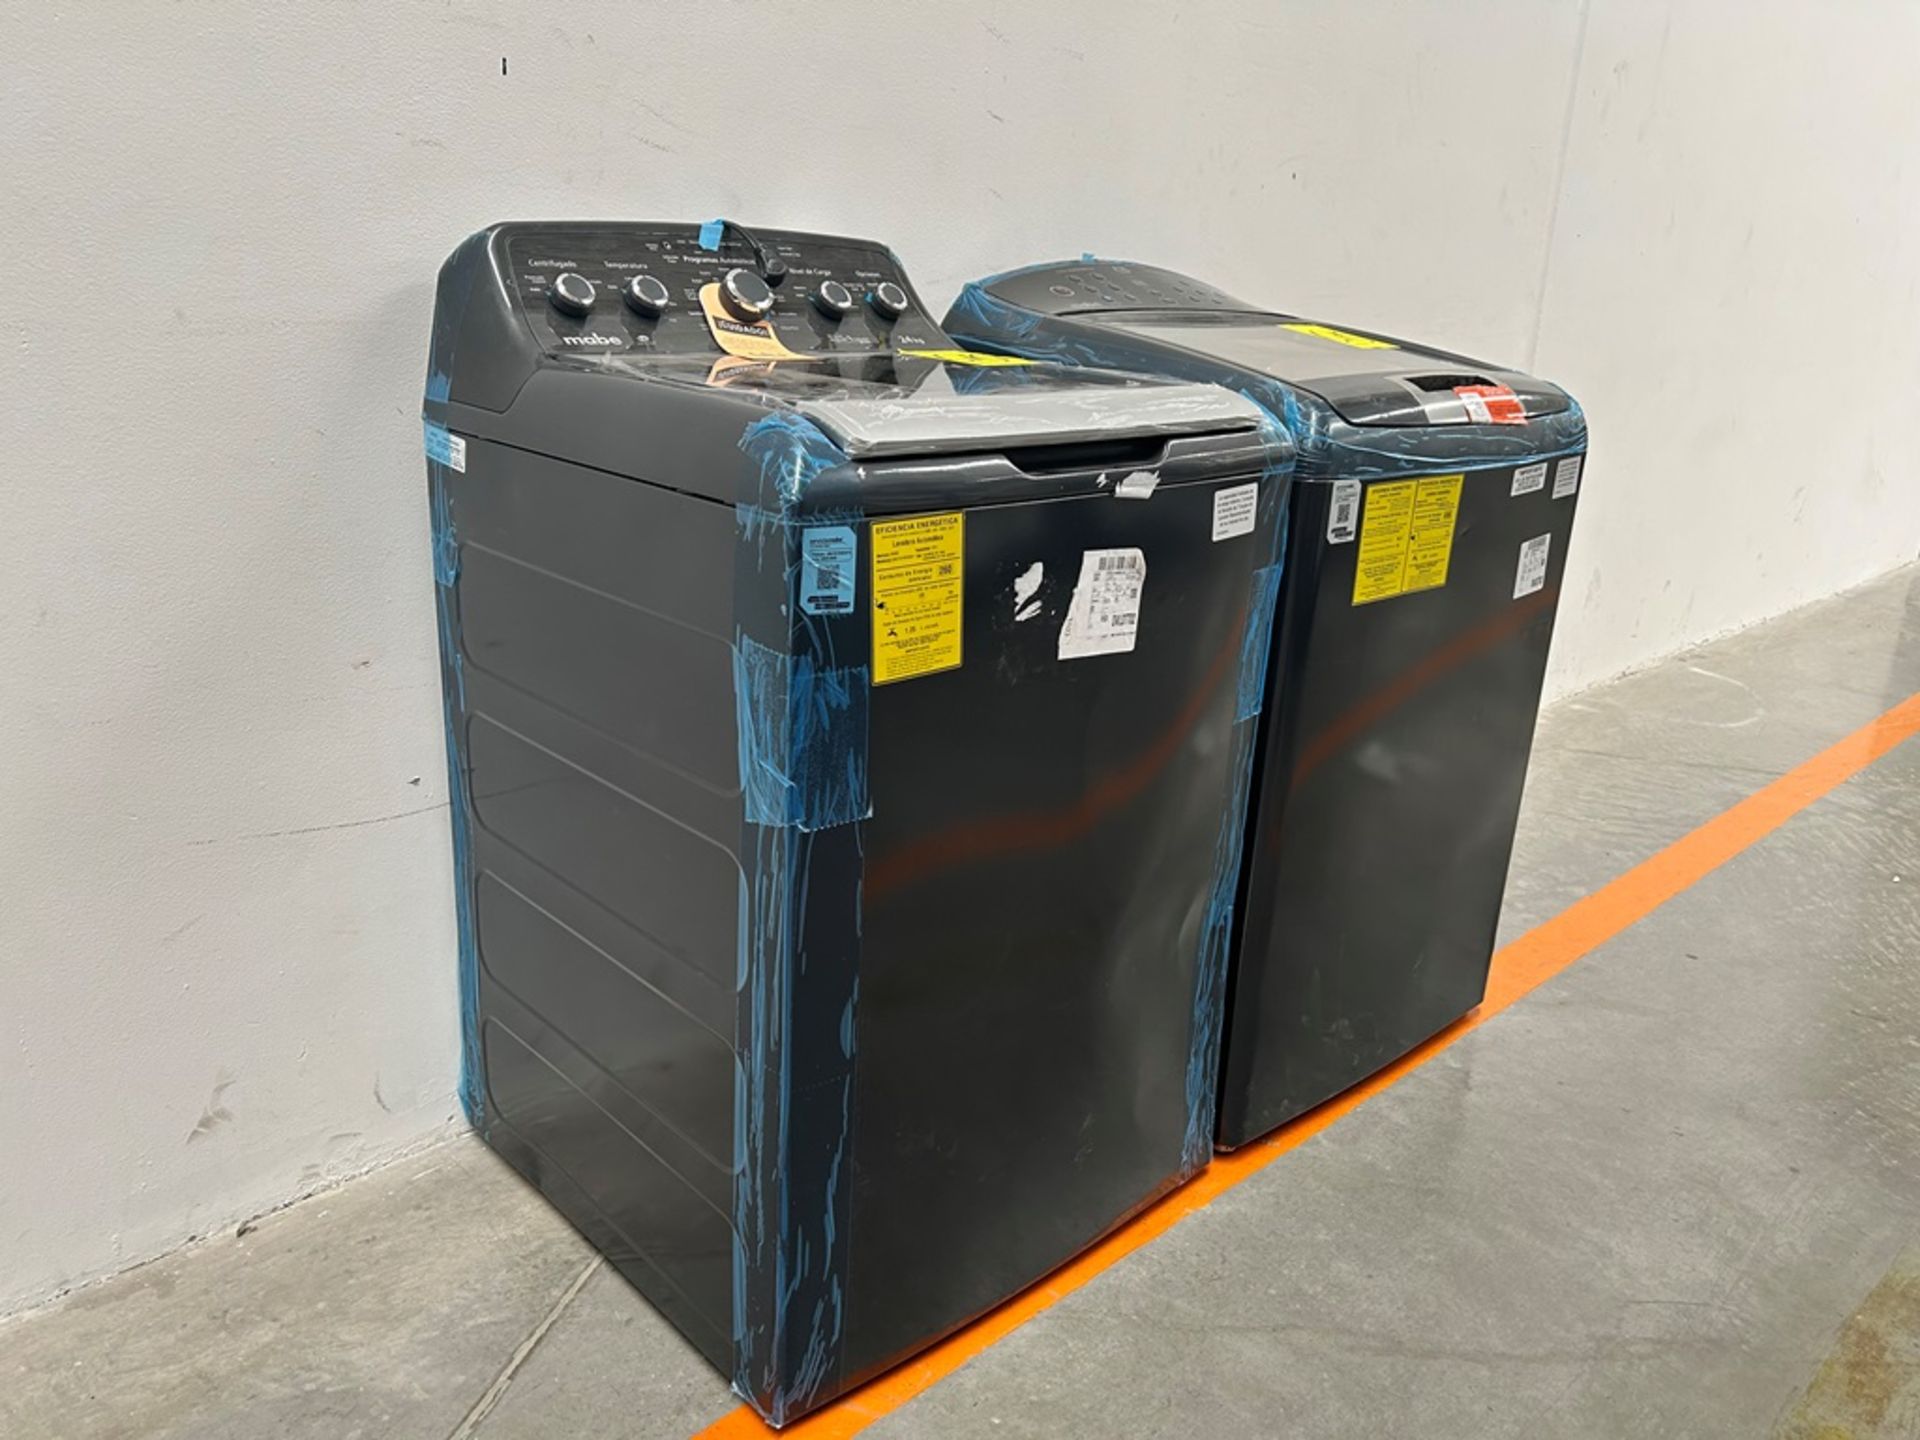 Lote de 2 lavadoras contiene: 1 Lavadora de 24 KG, Marca MABE, Modelo LMA7415WDAB10, Serie S18509, - Image 3 of 10